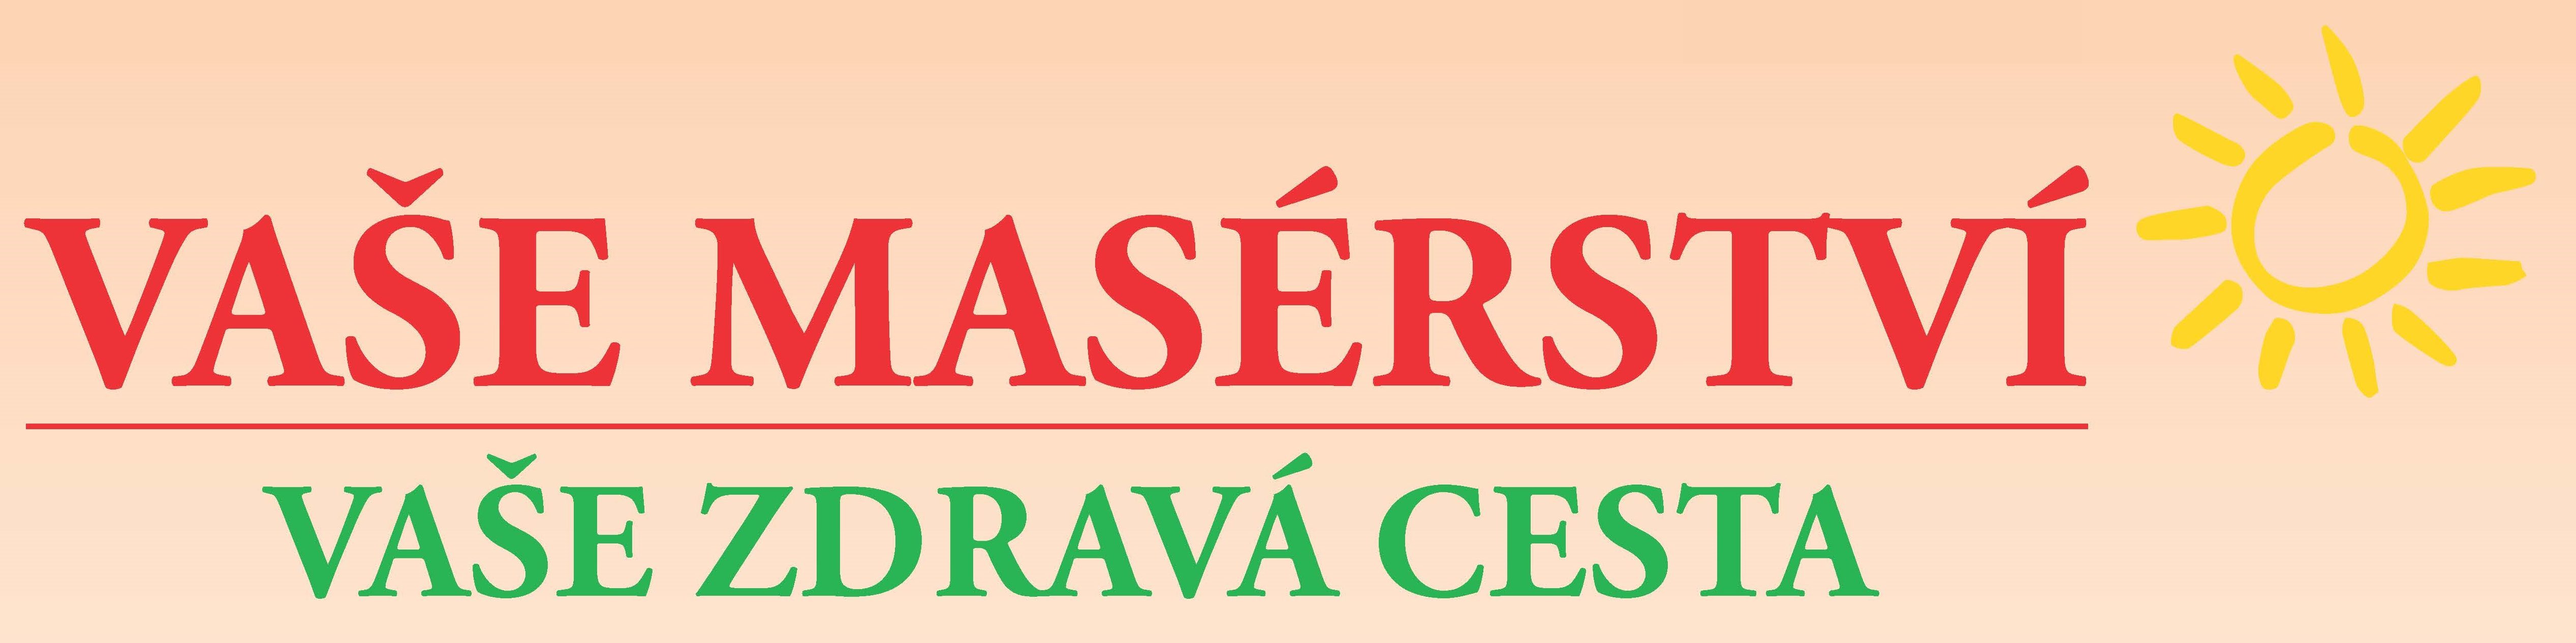 www.vasemaserstvi.cz